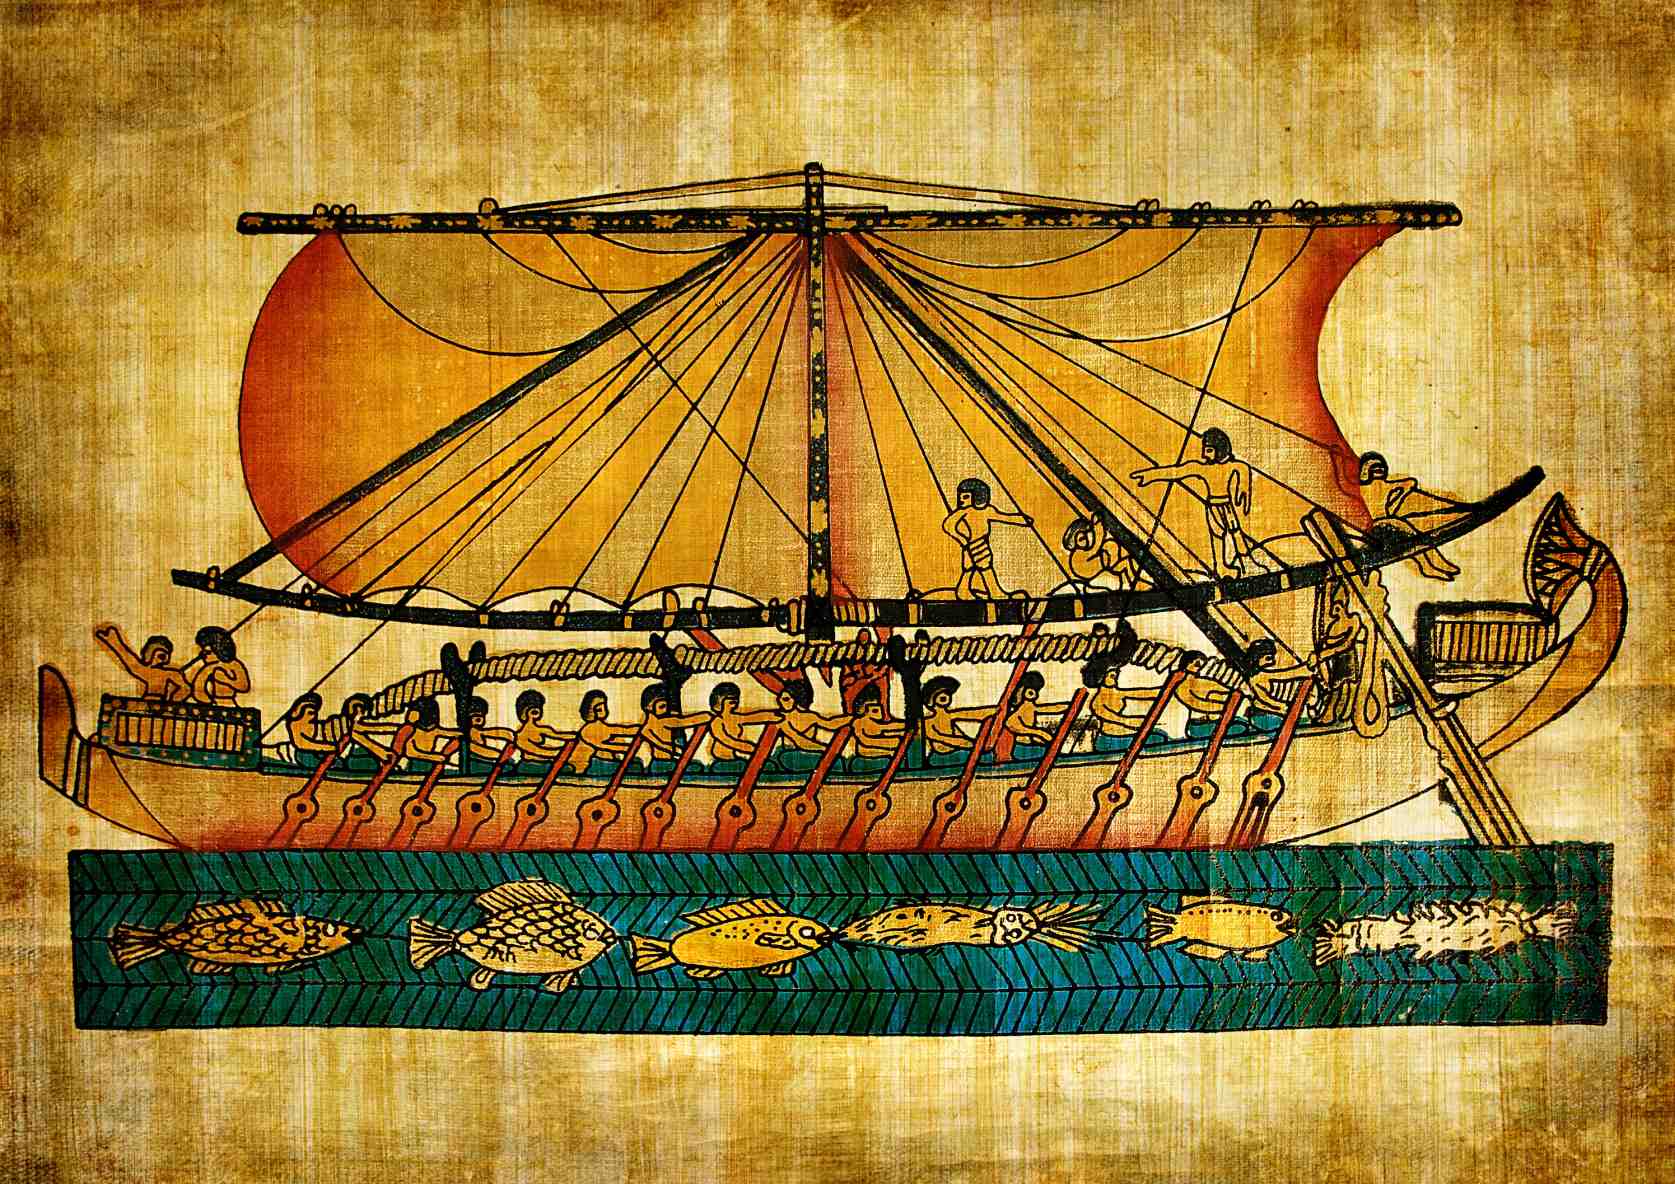 Tale of The Ship-Wrecked Sailor ke sengoloa se ngotsoeng ho Middle Kingdom of Egypt (2040-1782 BCE).